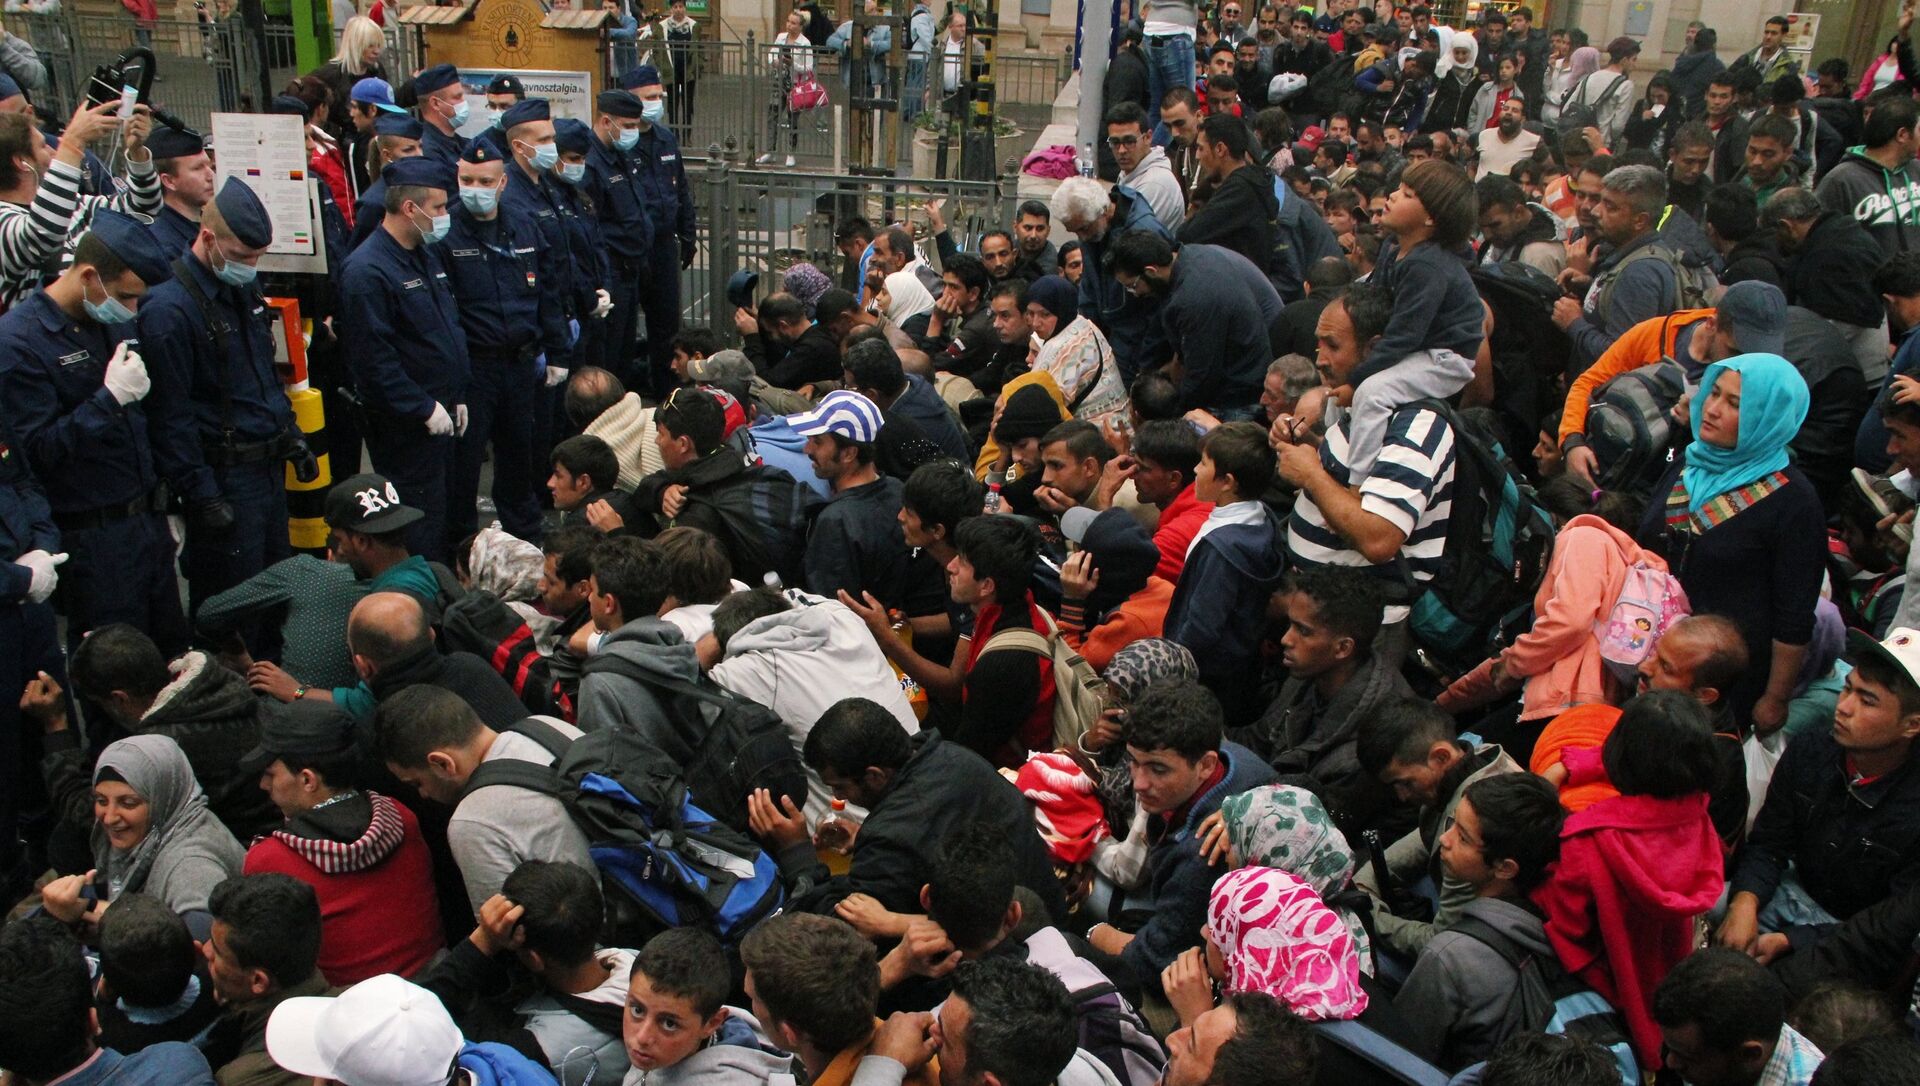 Европа нападение. Мигранты в Европе. Беженцы арабы в Европе. Толпа беженцев. Толпа мигрантов.